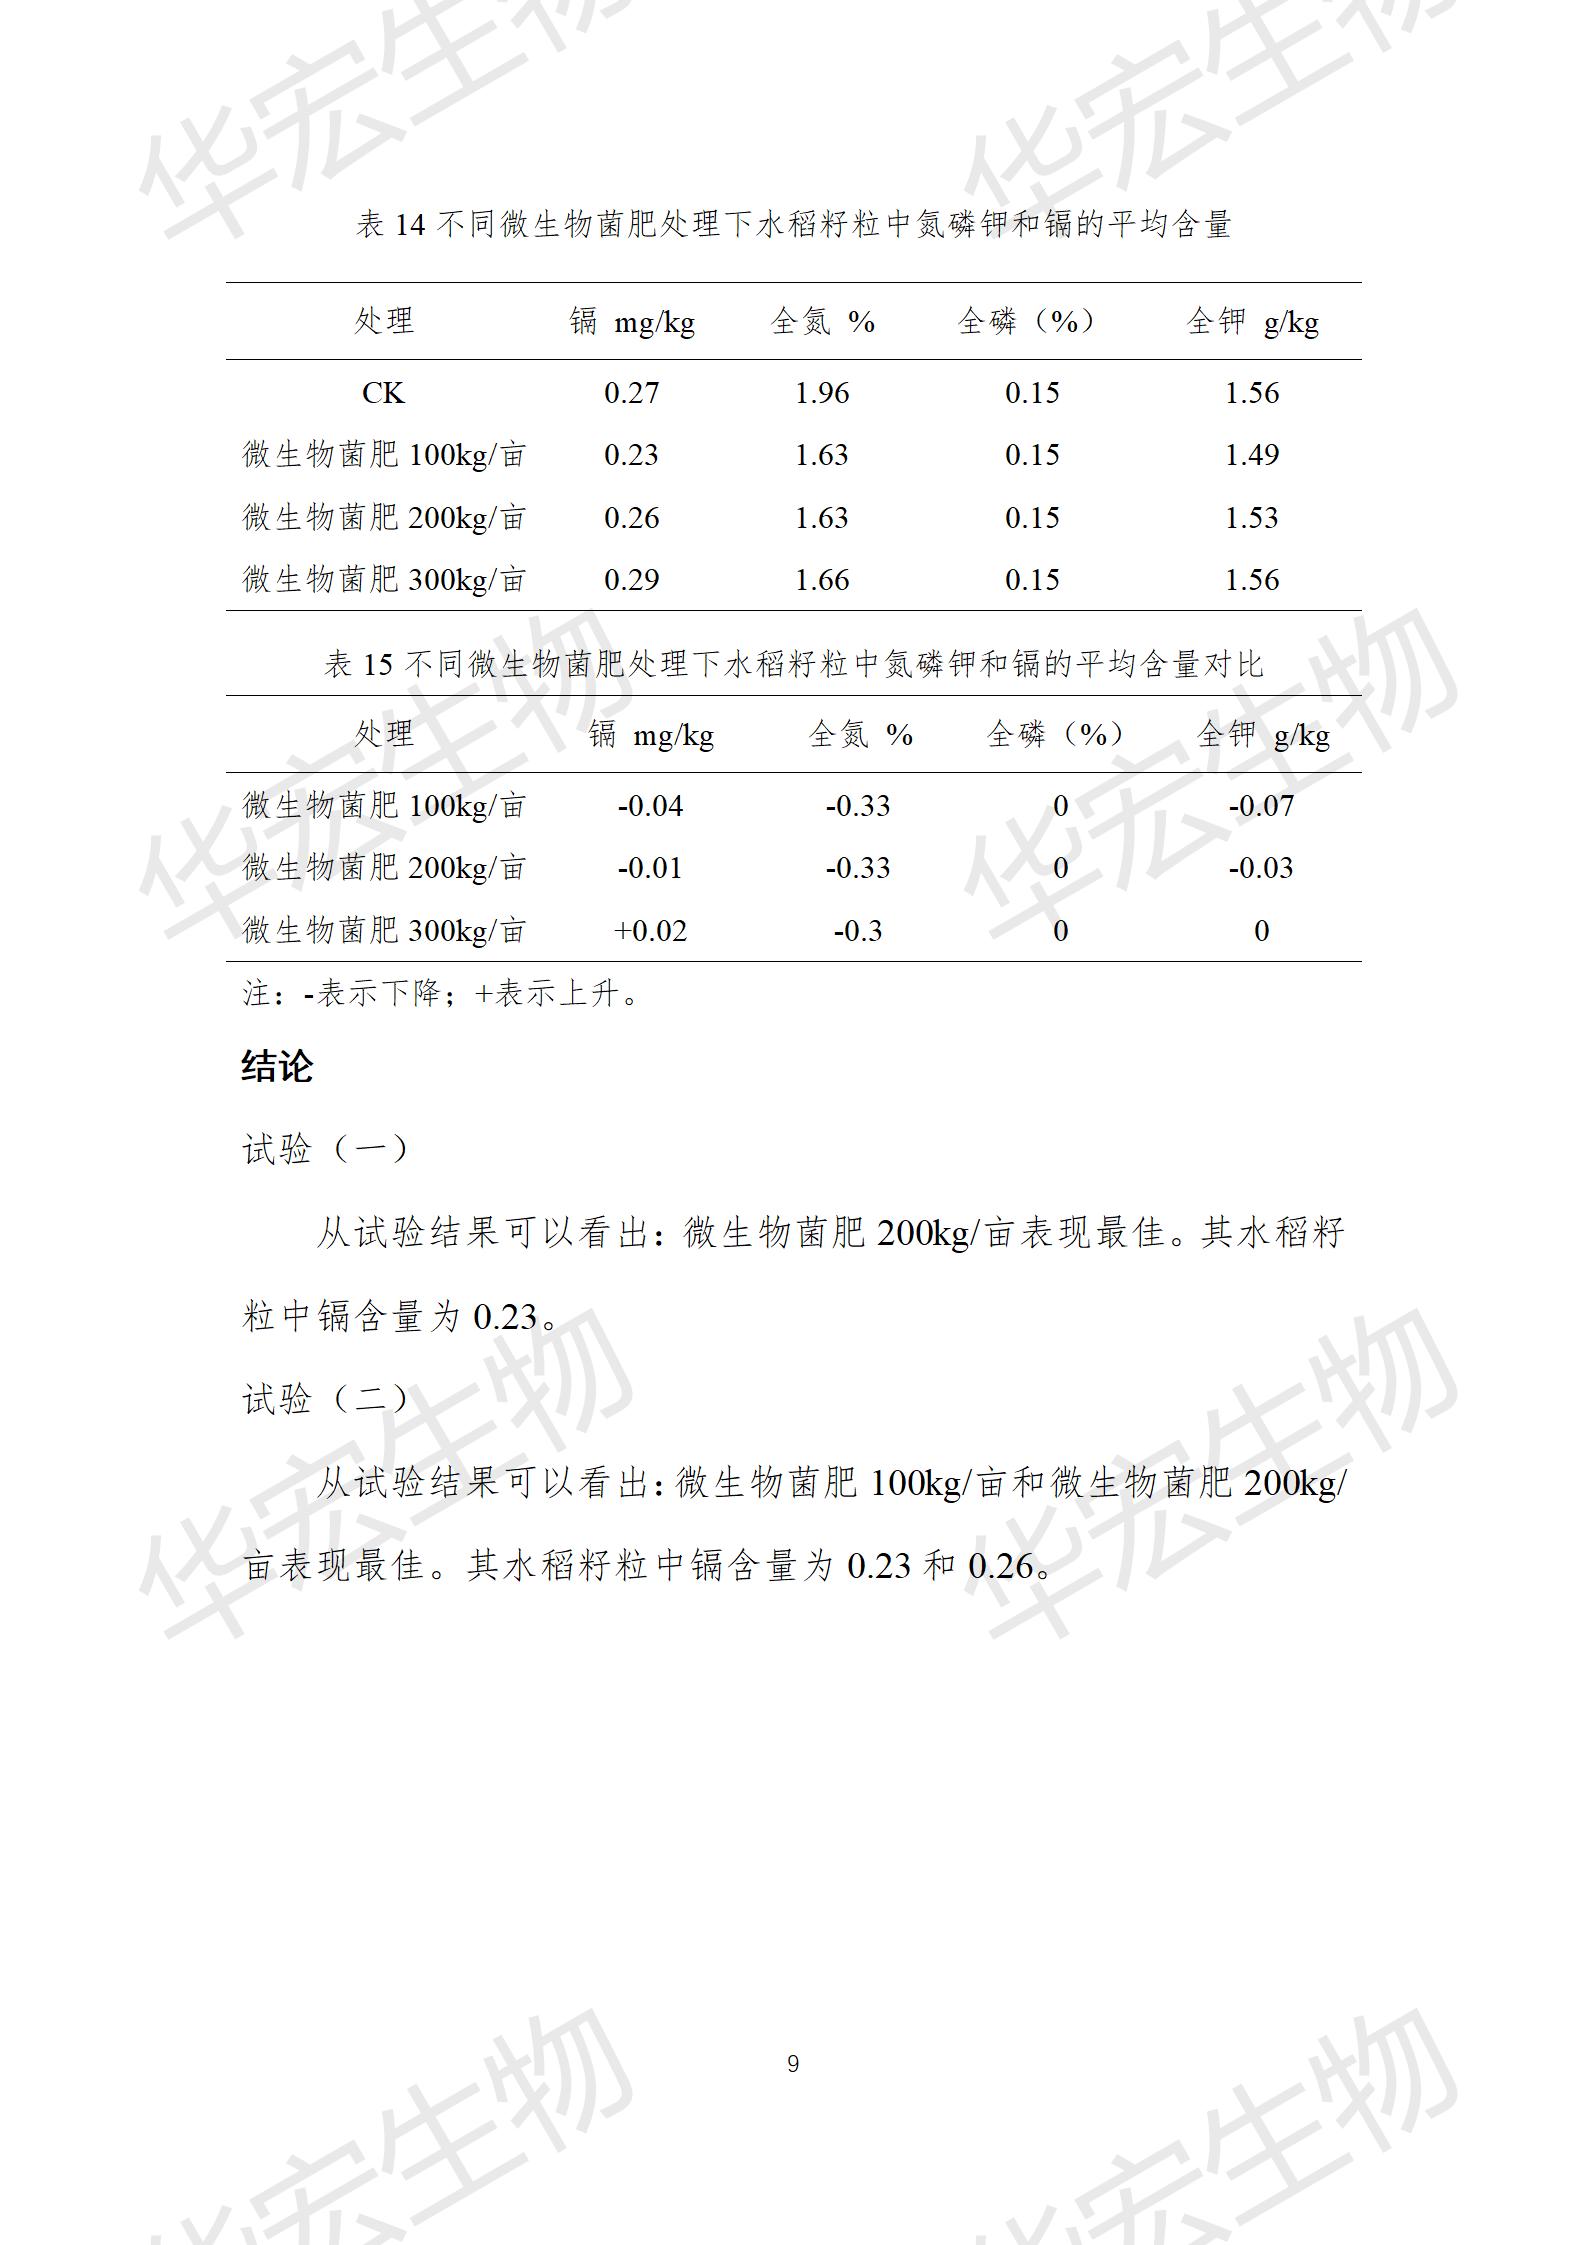 四川農科院上官宇先2021年重金屬污染實驗報告20220615_09.jpg